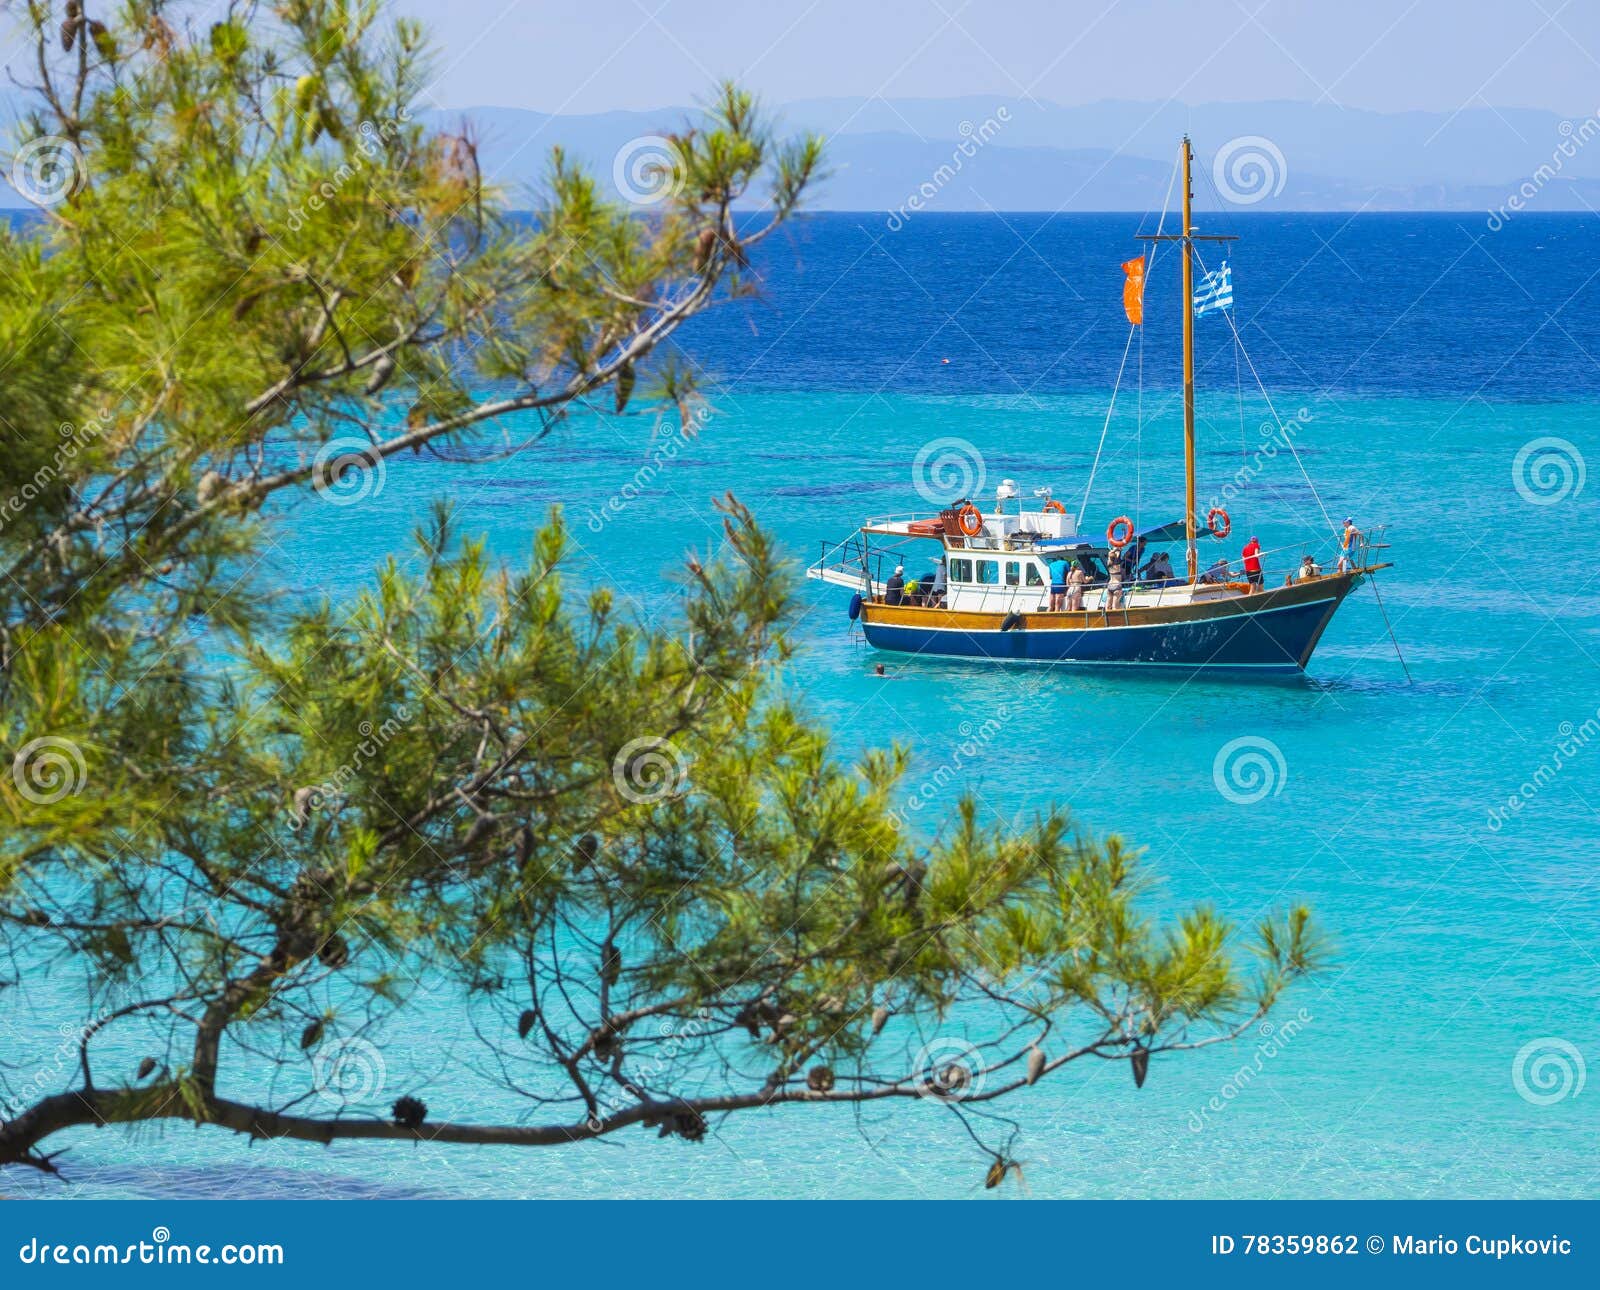 beach on halkidiki, sithonia, greece